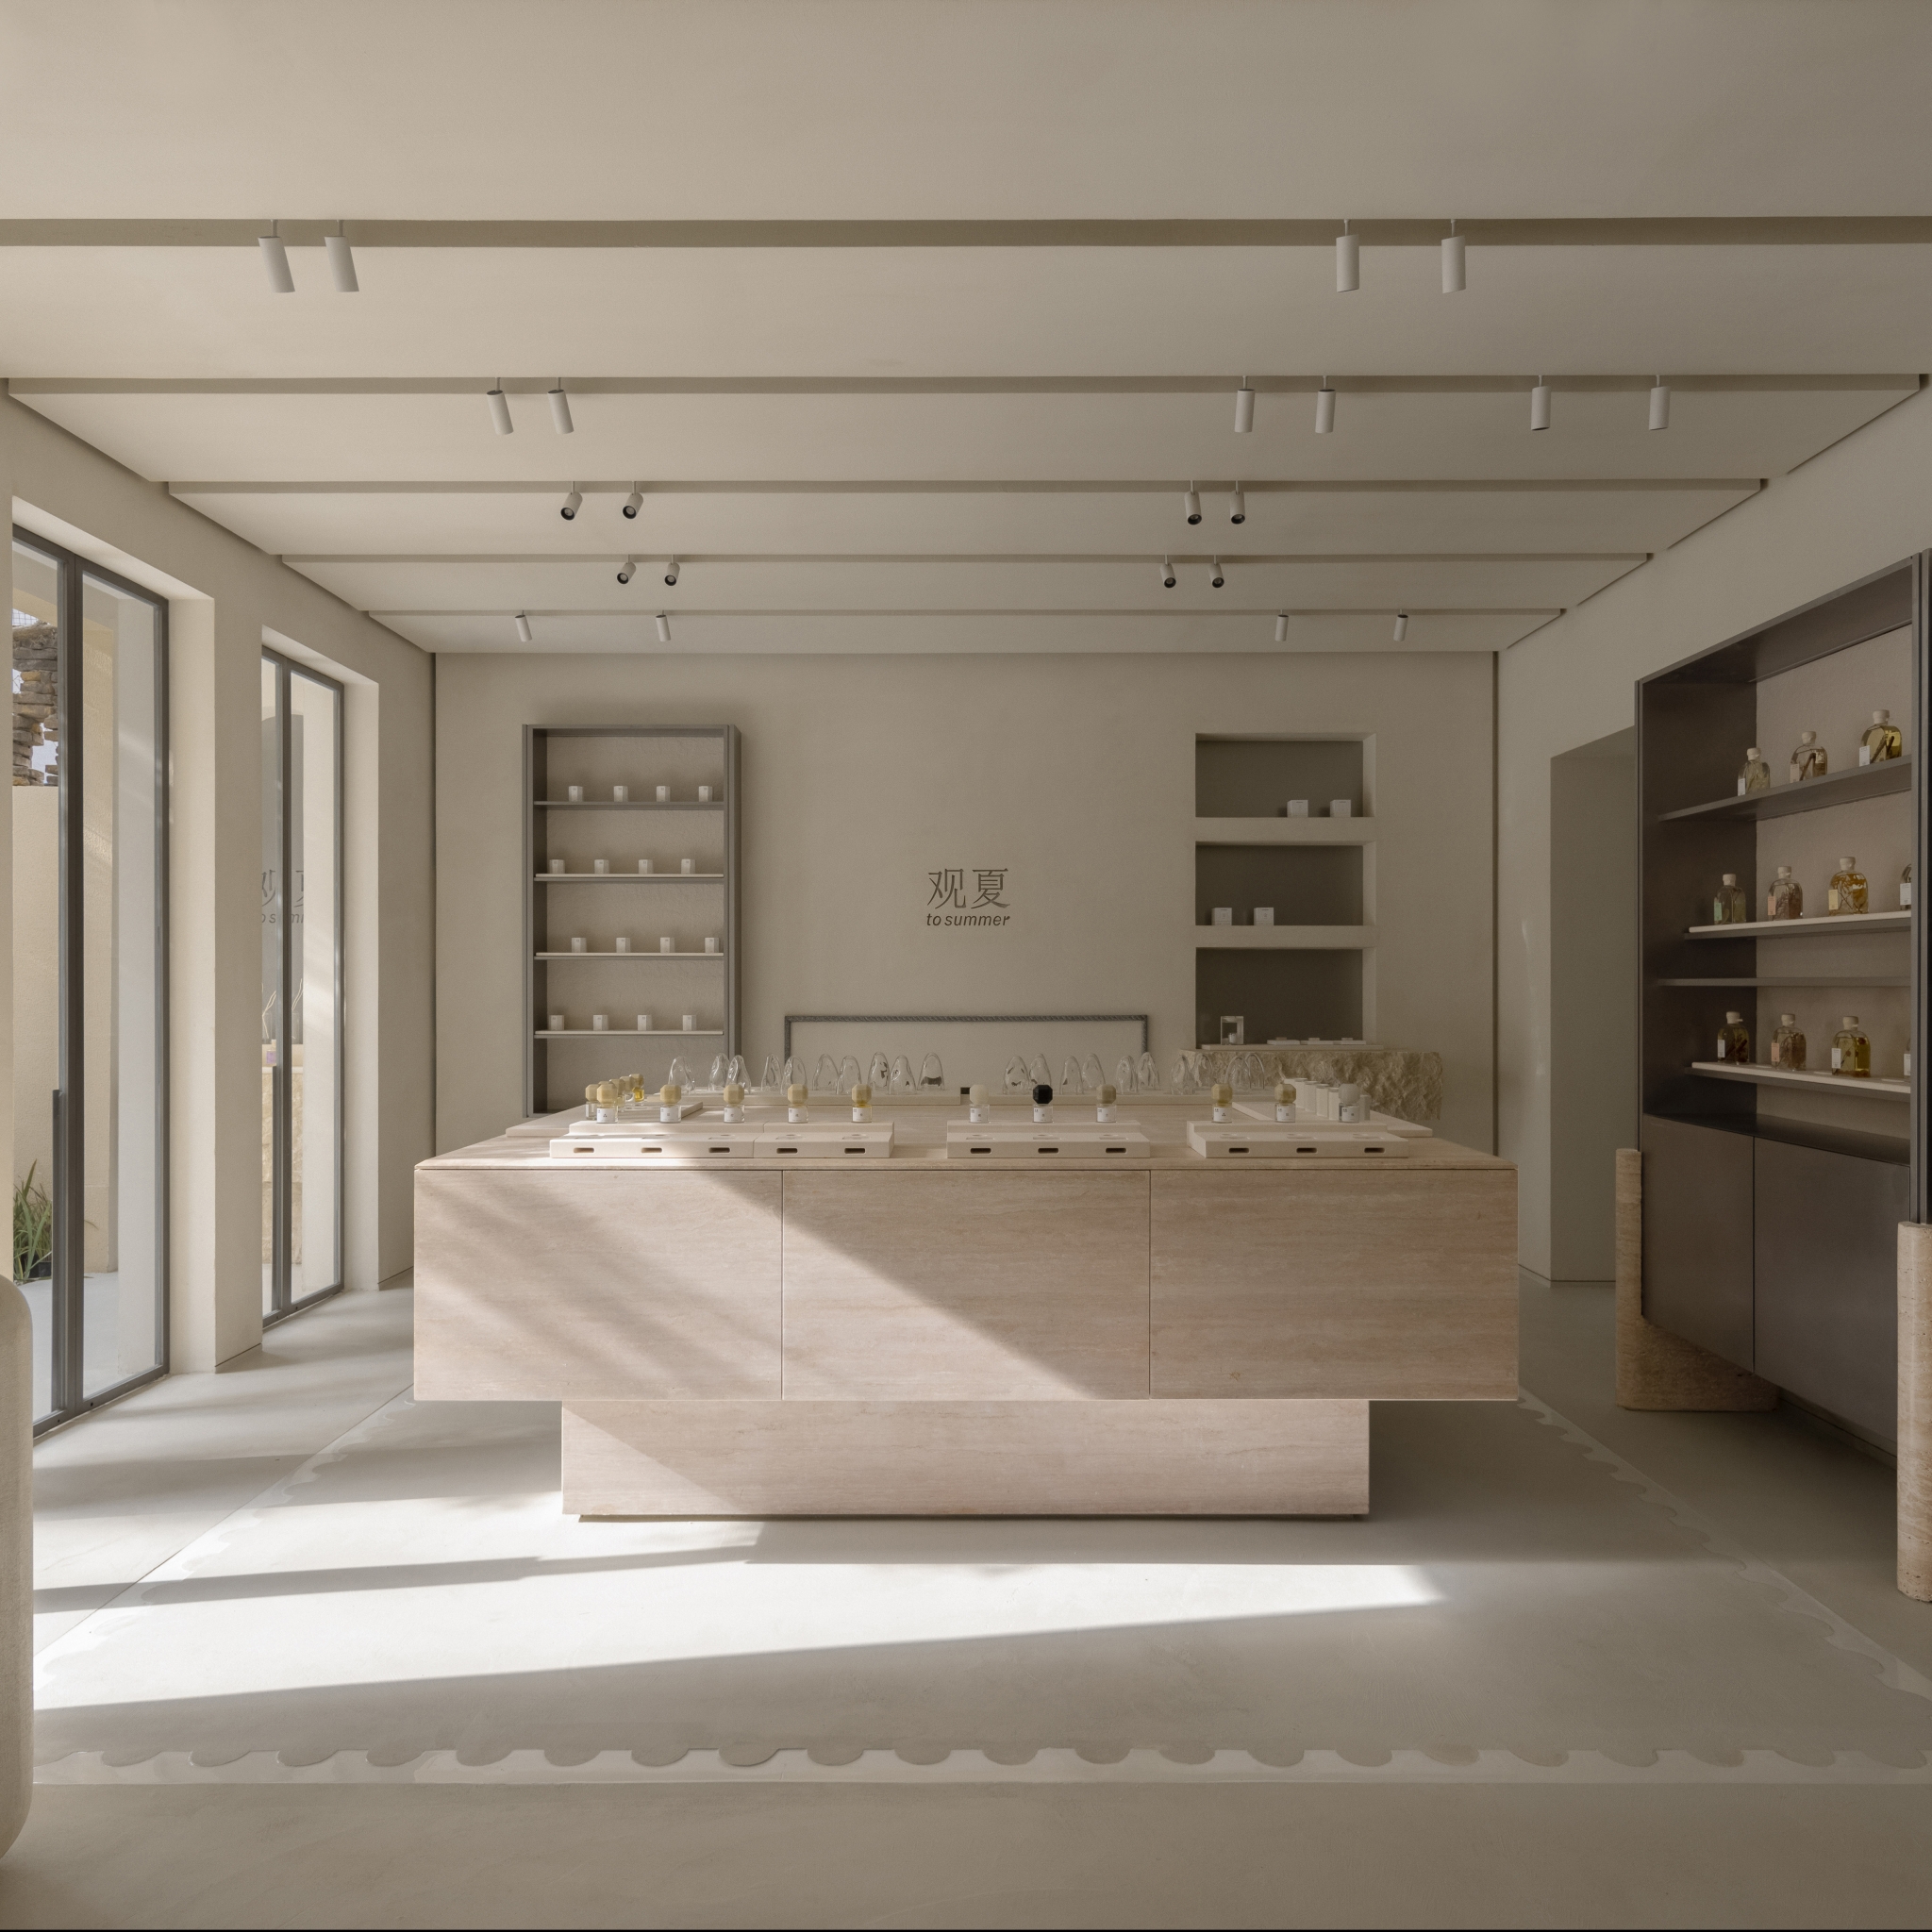 Designing In-Between To Summer Shanghai Flagship Store, Dezeen Awards 2022